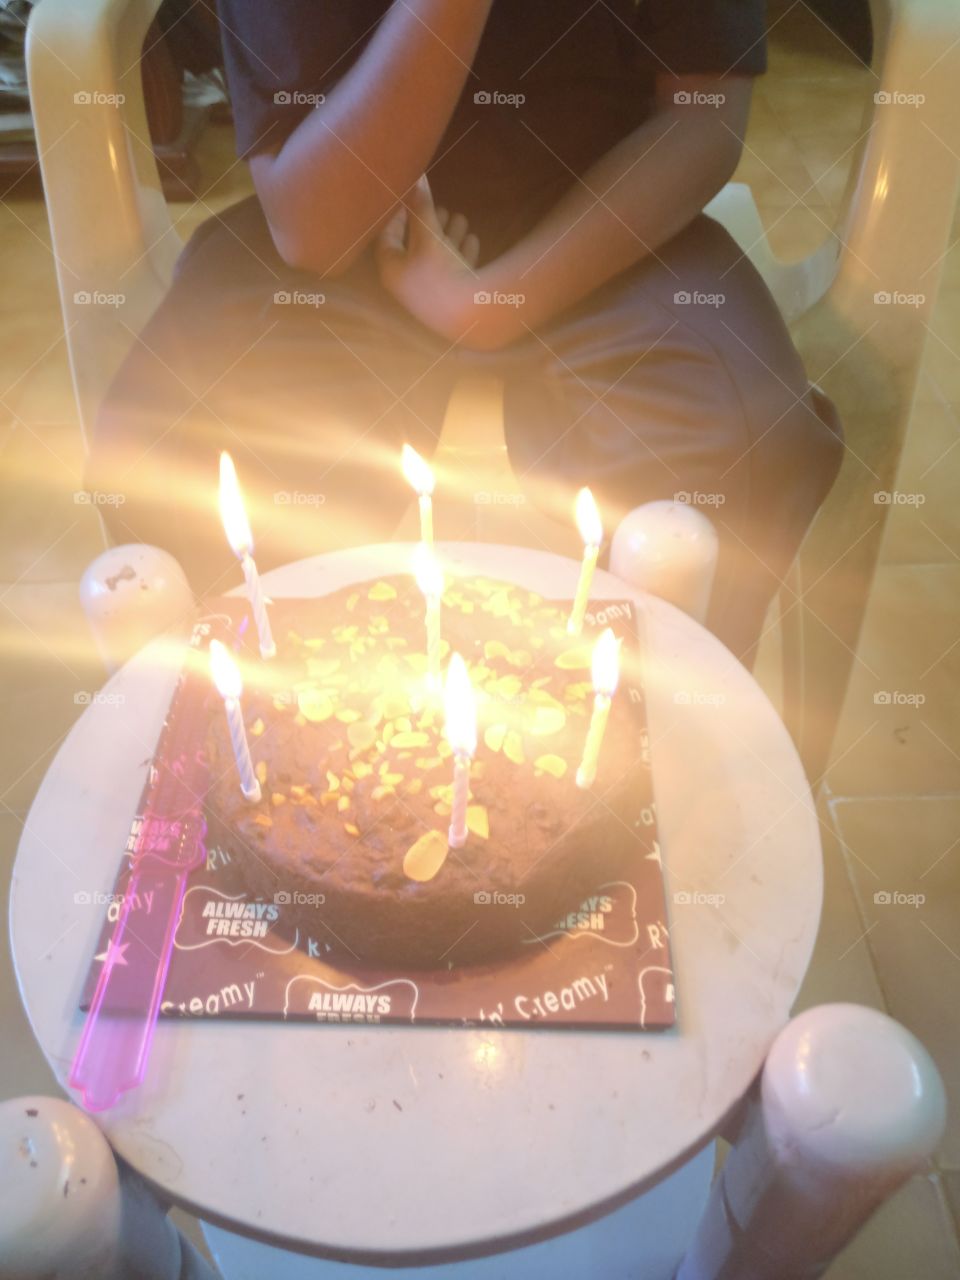 celebrating 7th birthday of my nephew